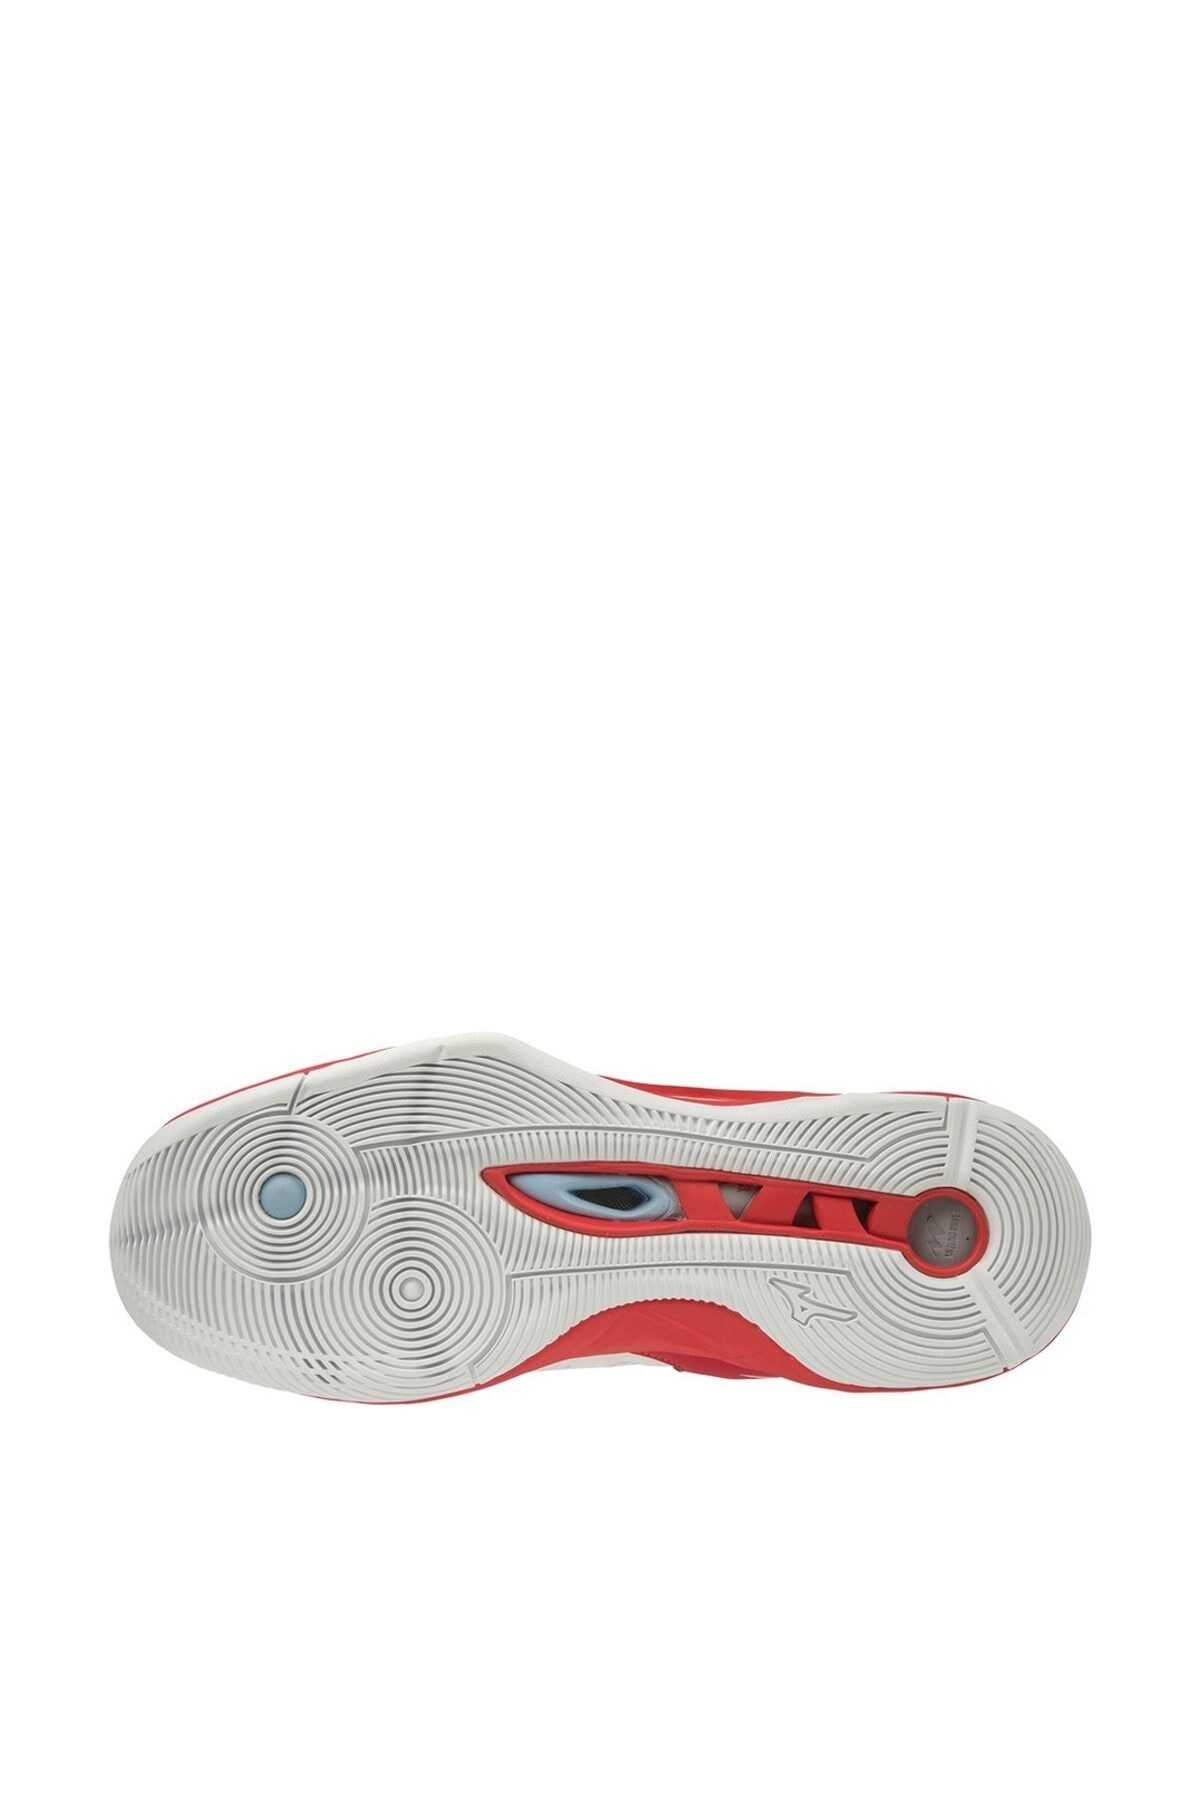 کفش والیبال یونیسکس دو رنگ سفید قرمز مدل Wave Momentum Mıd برند MIZUNO 